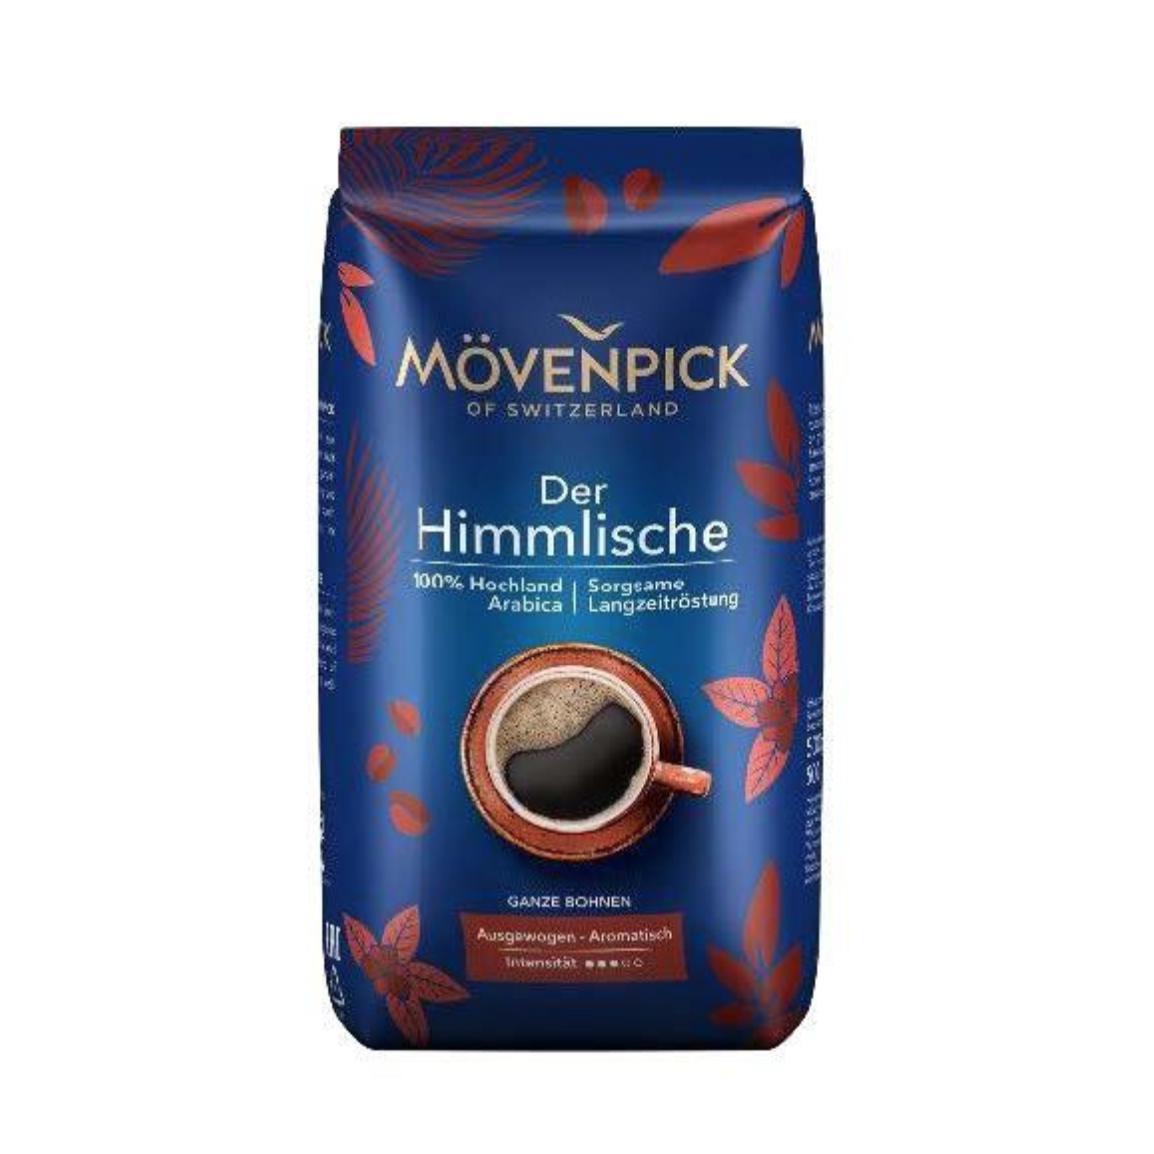 Кофе в зернах Movenpick of Switzerland Der Himmlische, 500 гр., фольгированный пакет